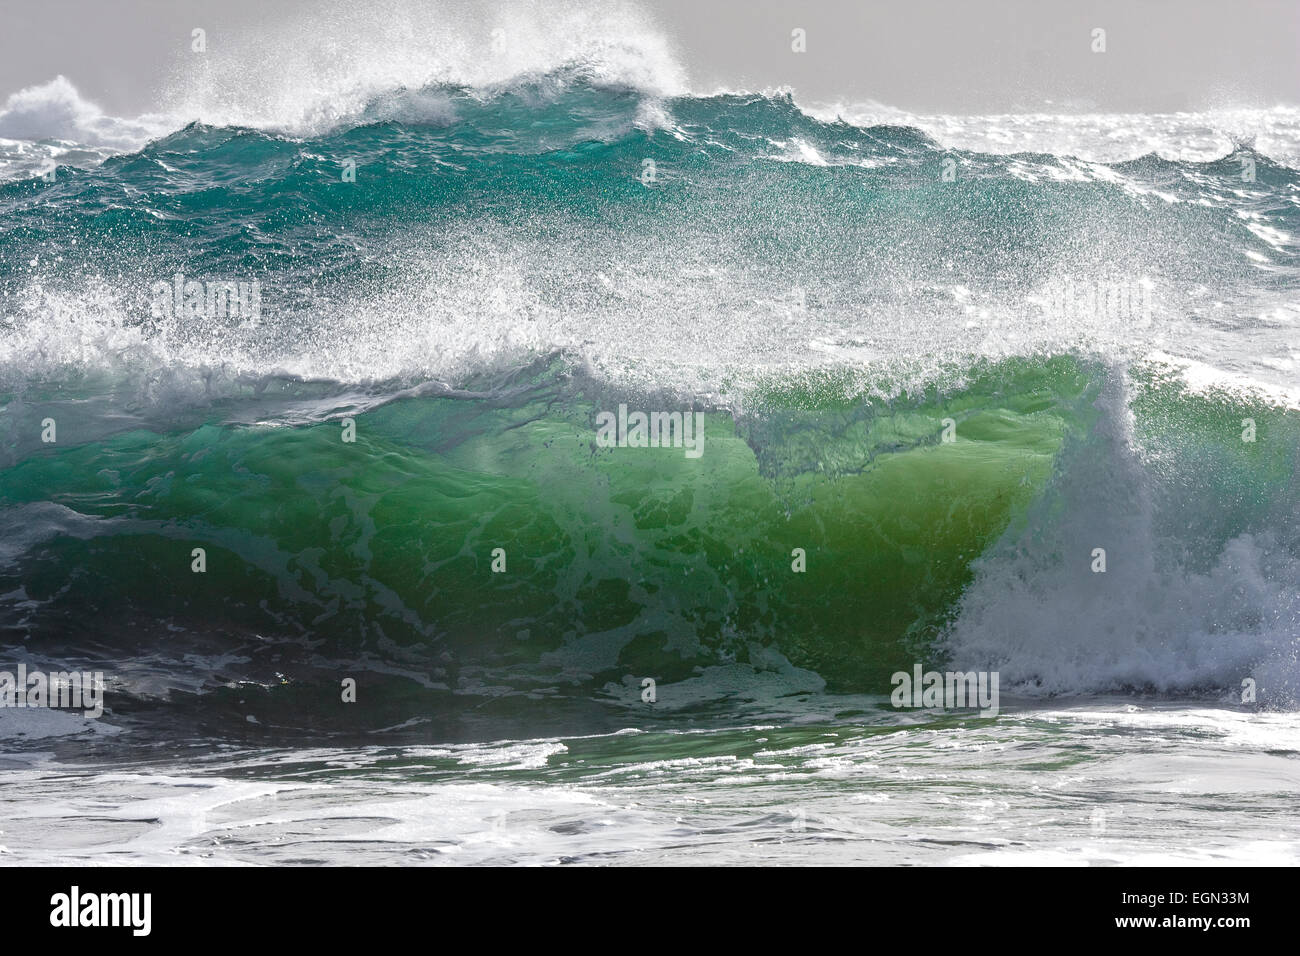 Crashing waves, Cornwall, UK. Stock Photo